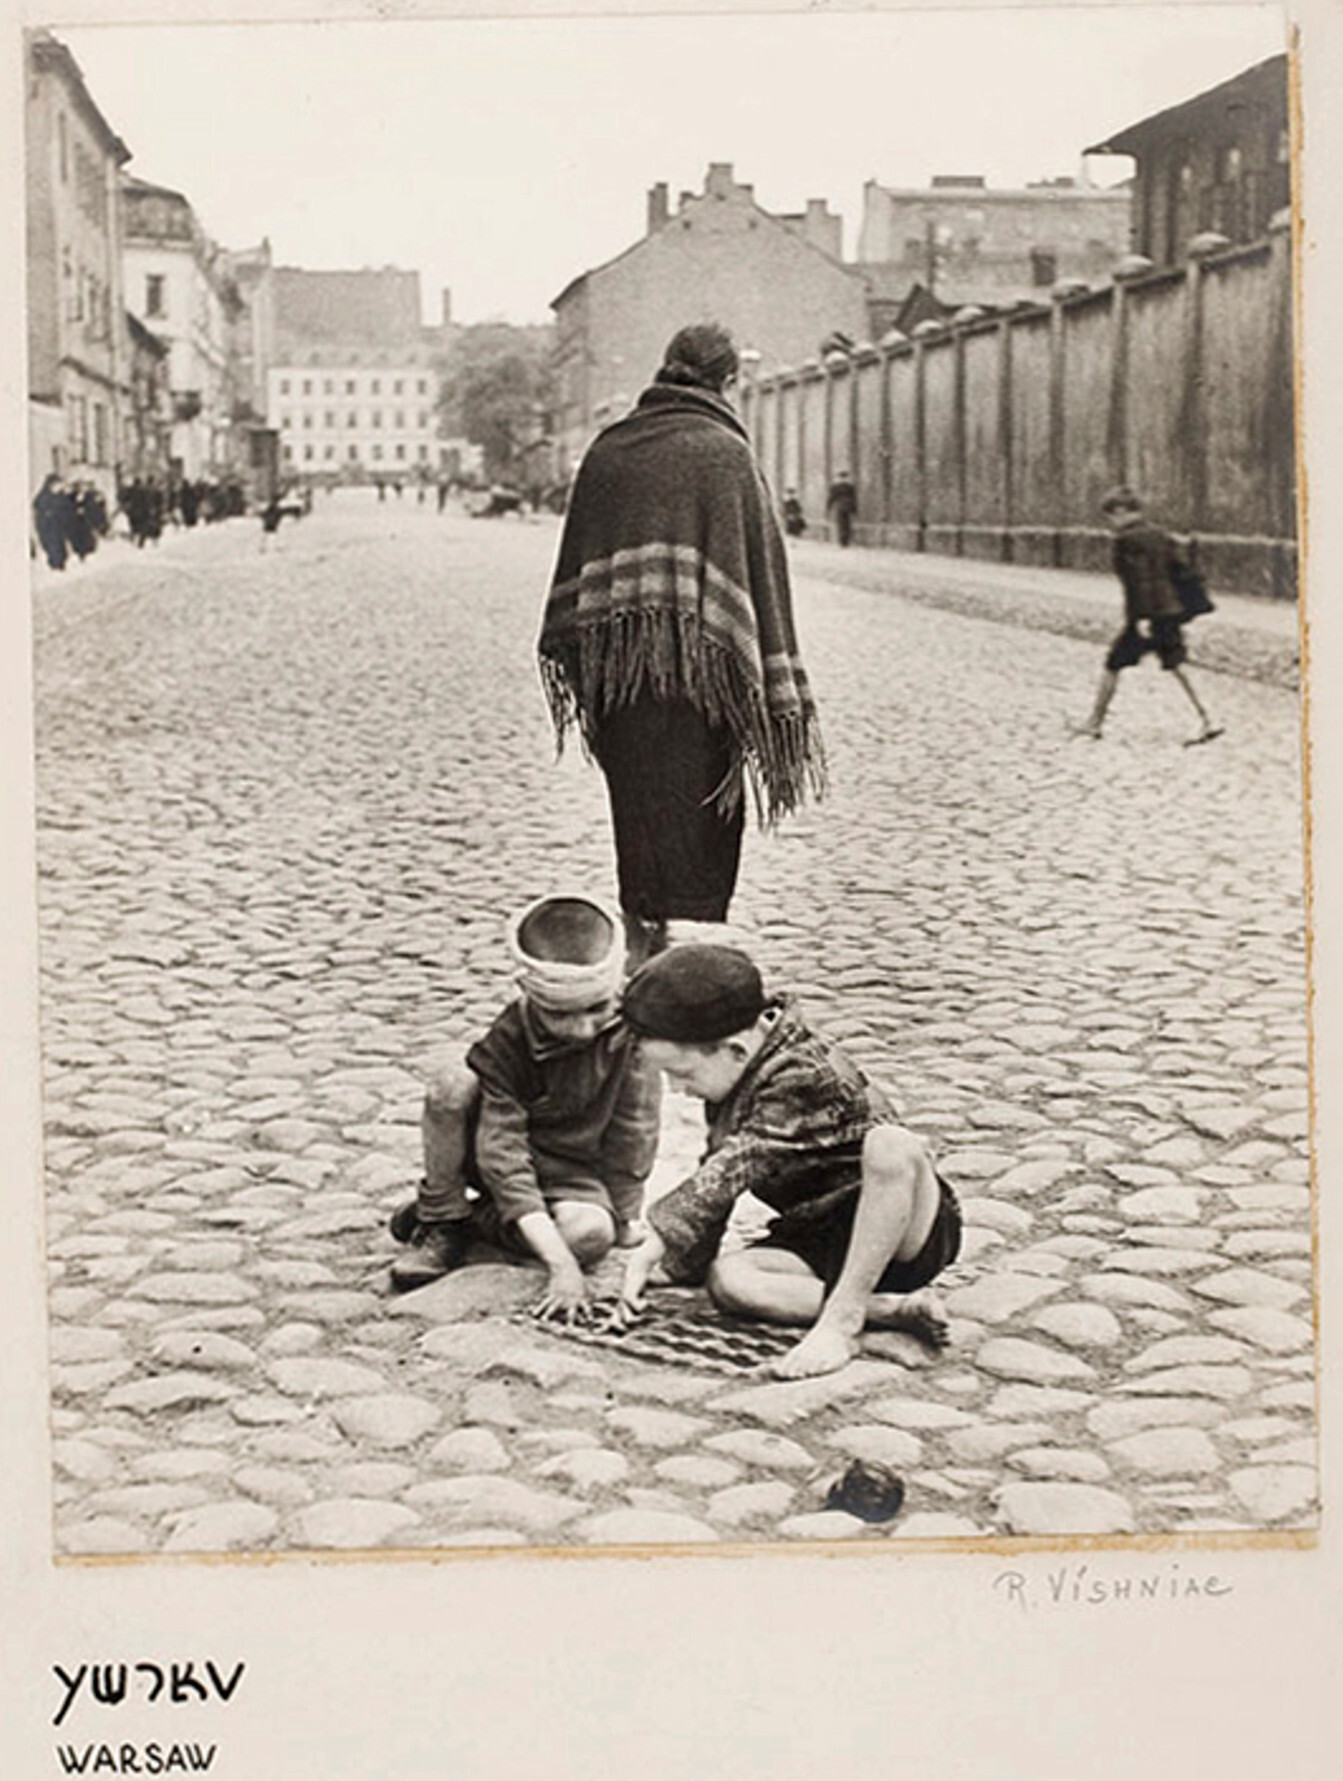 Дети играют на улице, Балютский район Лодзи или Варшавы, ок. 1935-38 гг.  Фотограф Роман Вишняк